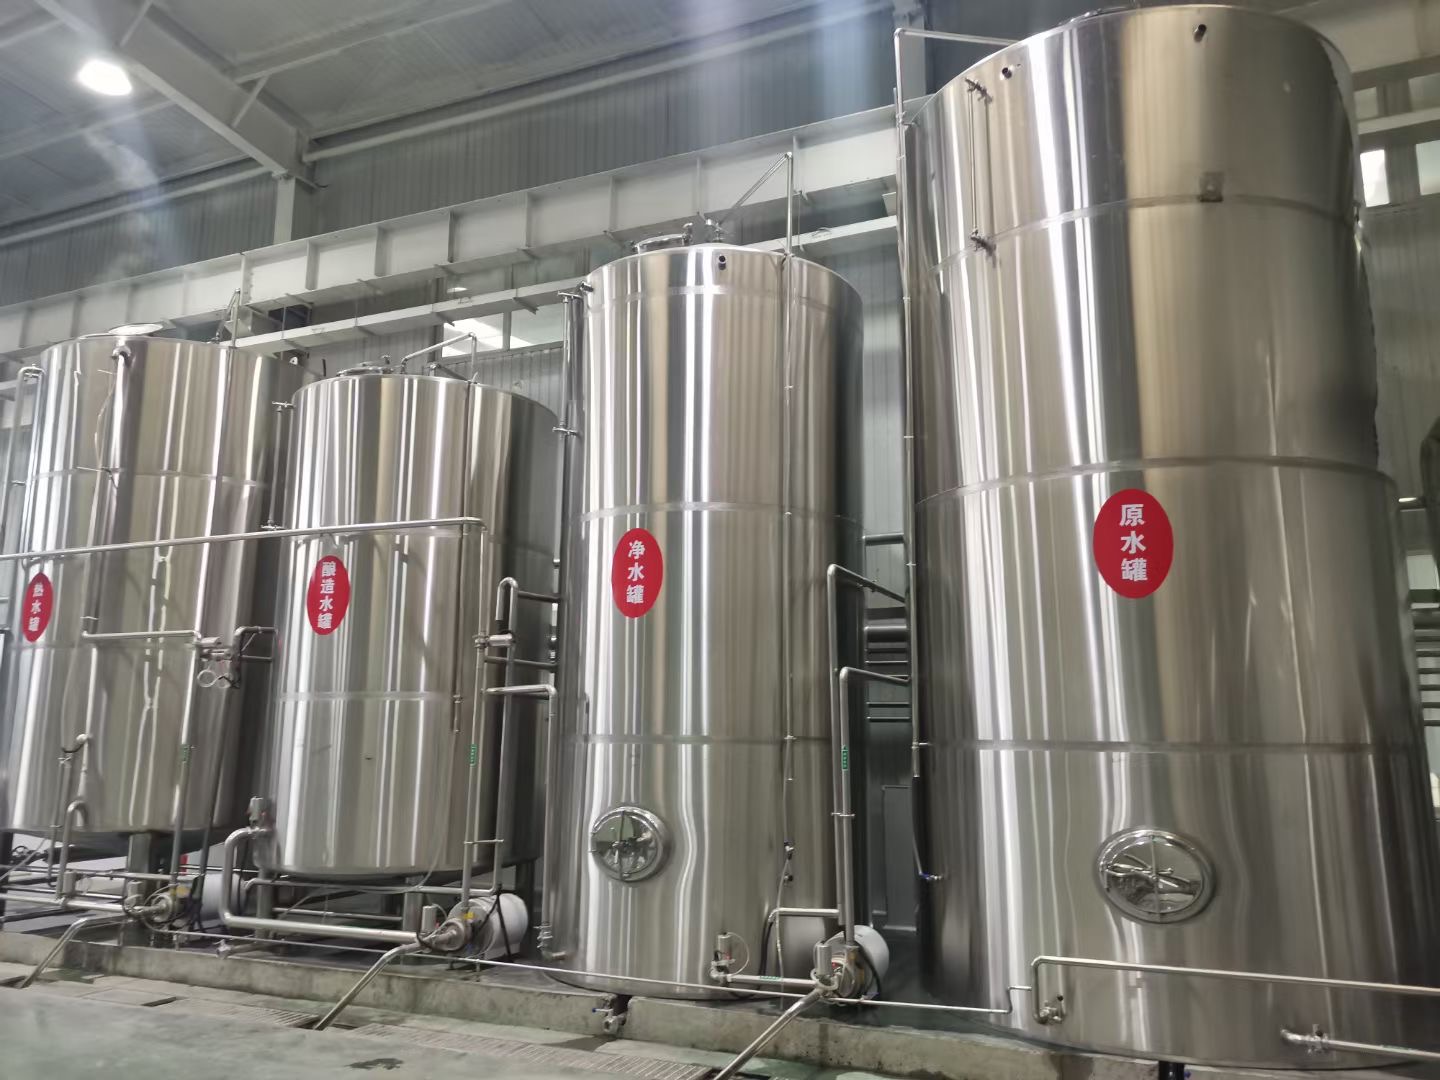 一套适合筹建啤酒厂 日产2吨高产量中小型精酿啤酒设备